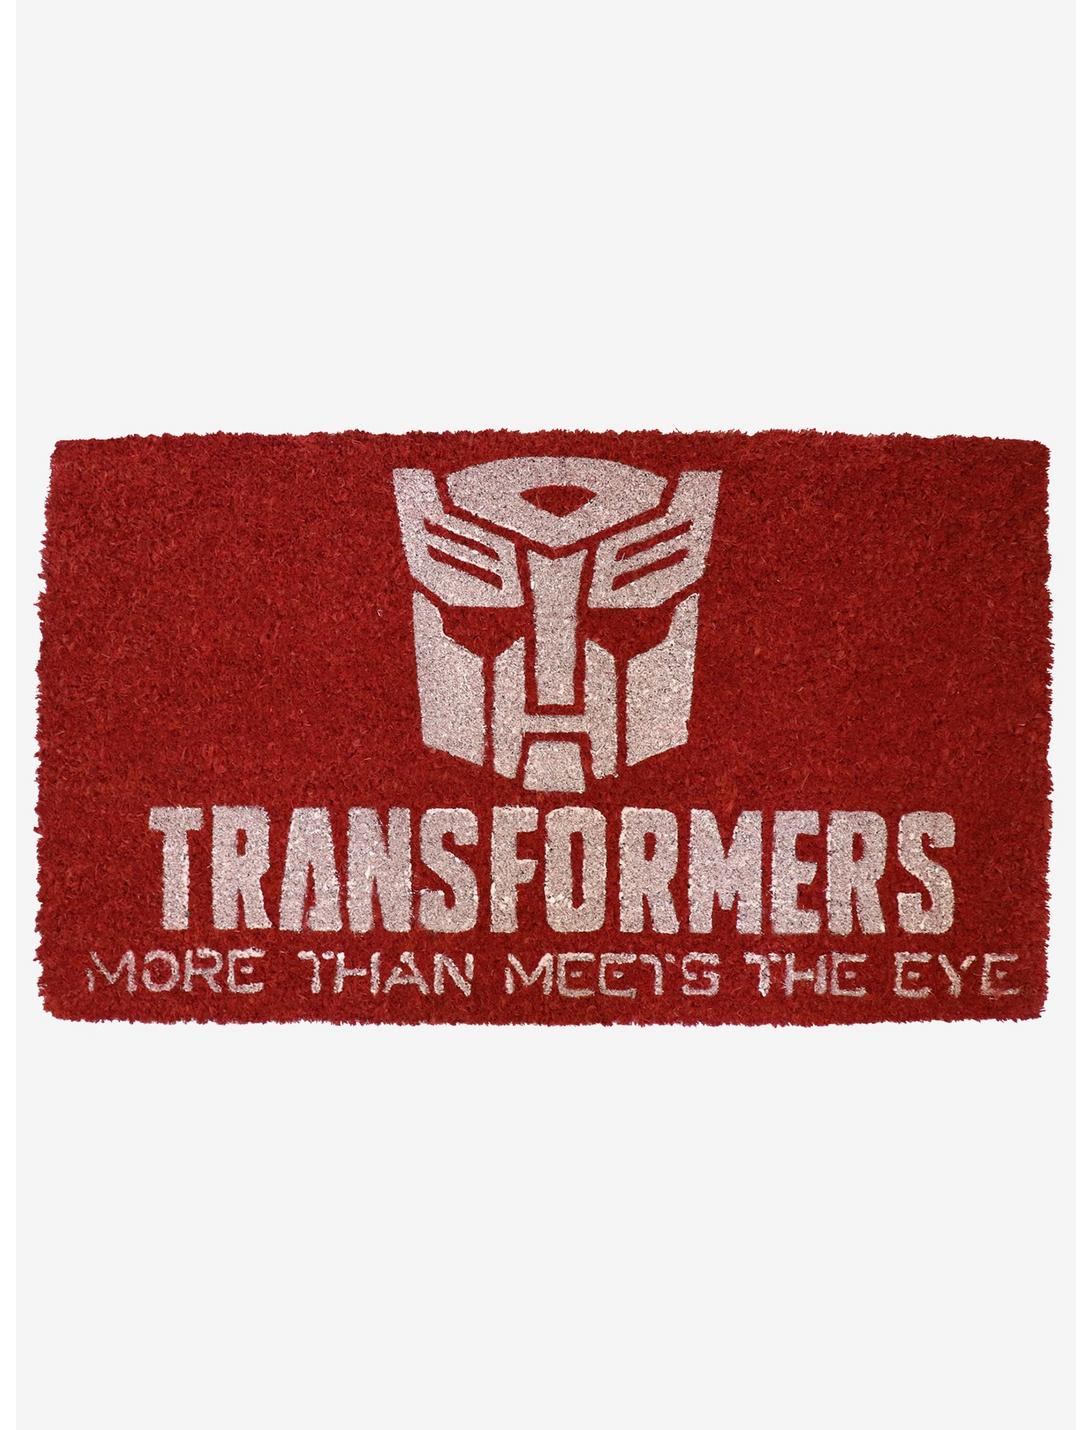 Transformers Logo Doormat, , hi-res